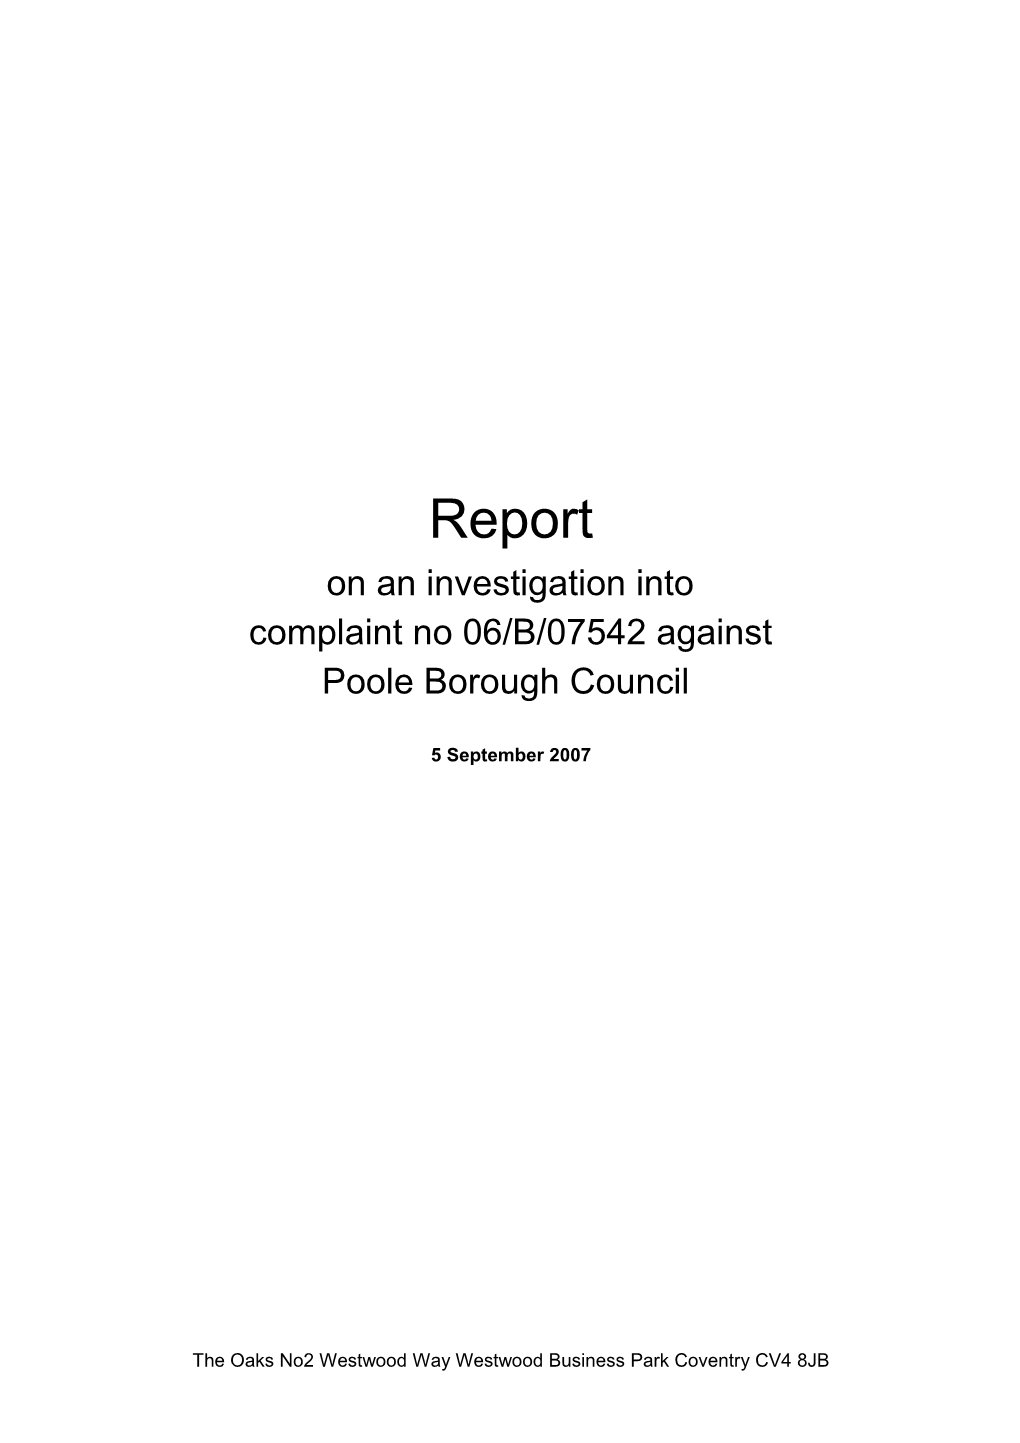 Investigation Into Complaint No 06/B/07542 Against Poole Borough Council